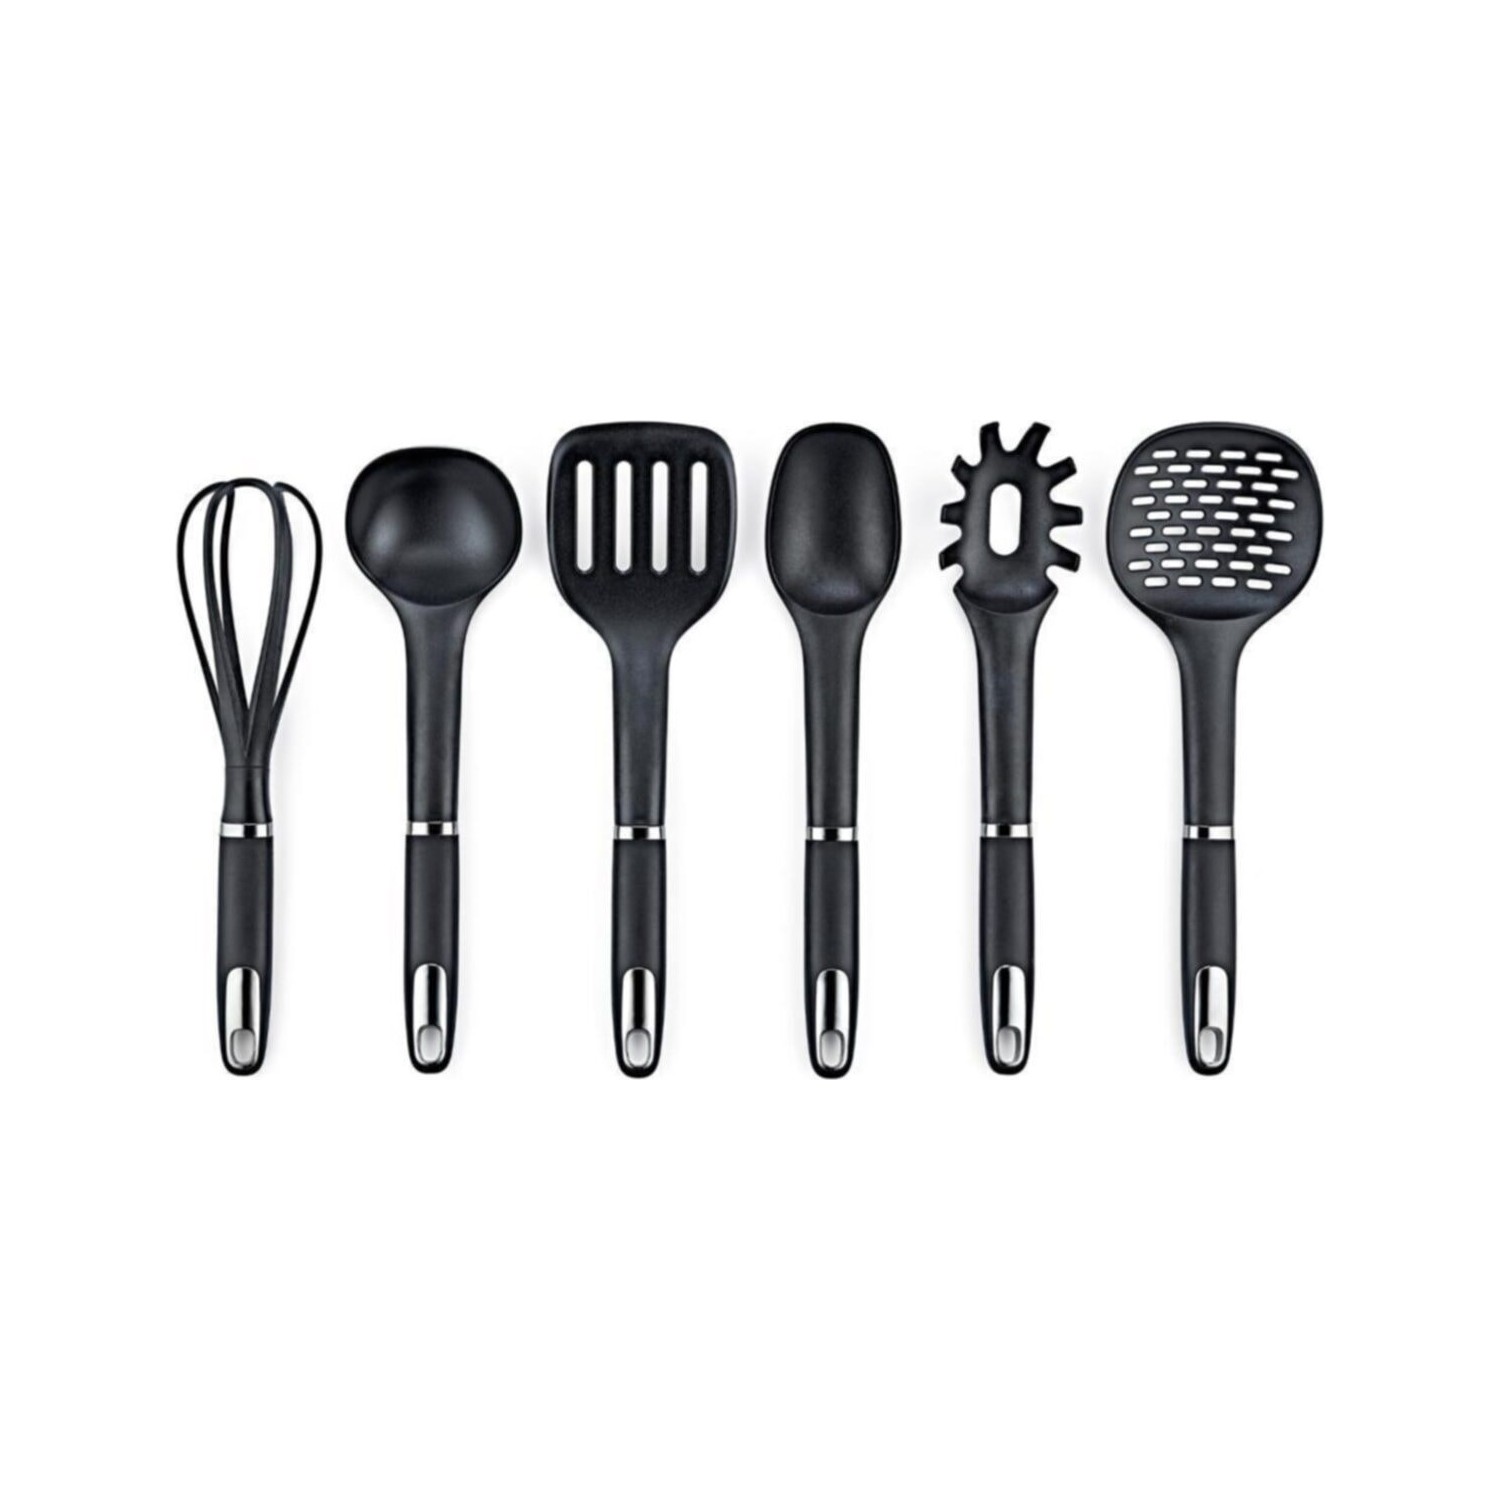 Набор кухонных принадлежностей Vipahmet из 6 предметов, черный набор кухонных принадлежностей green 6 предметов